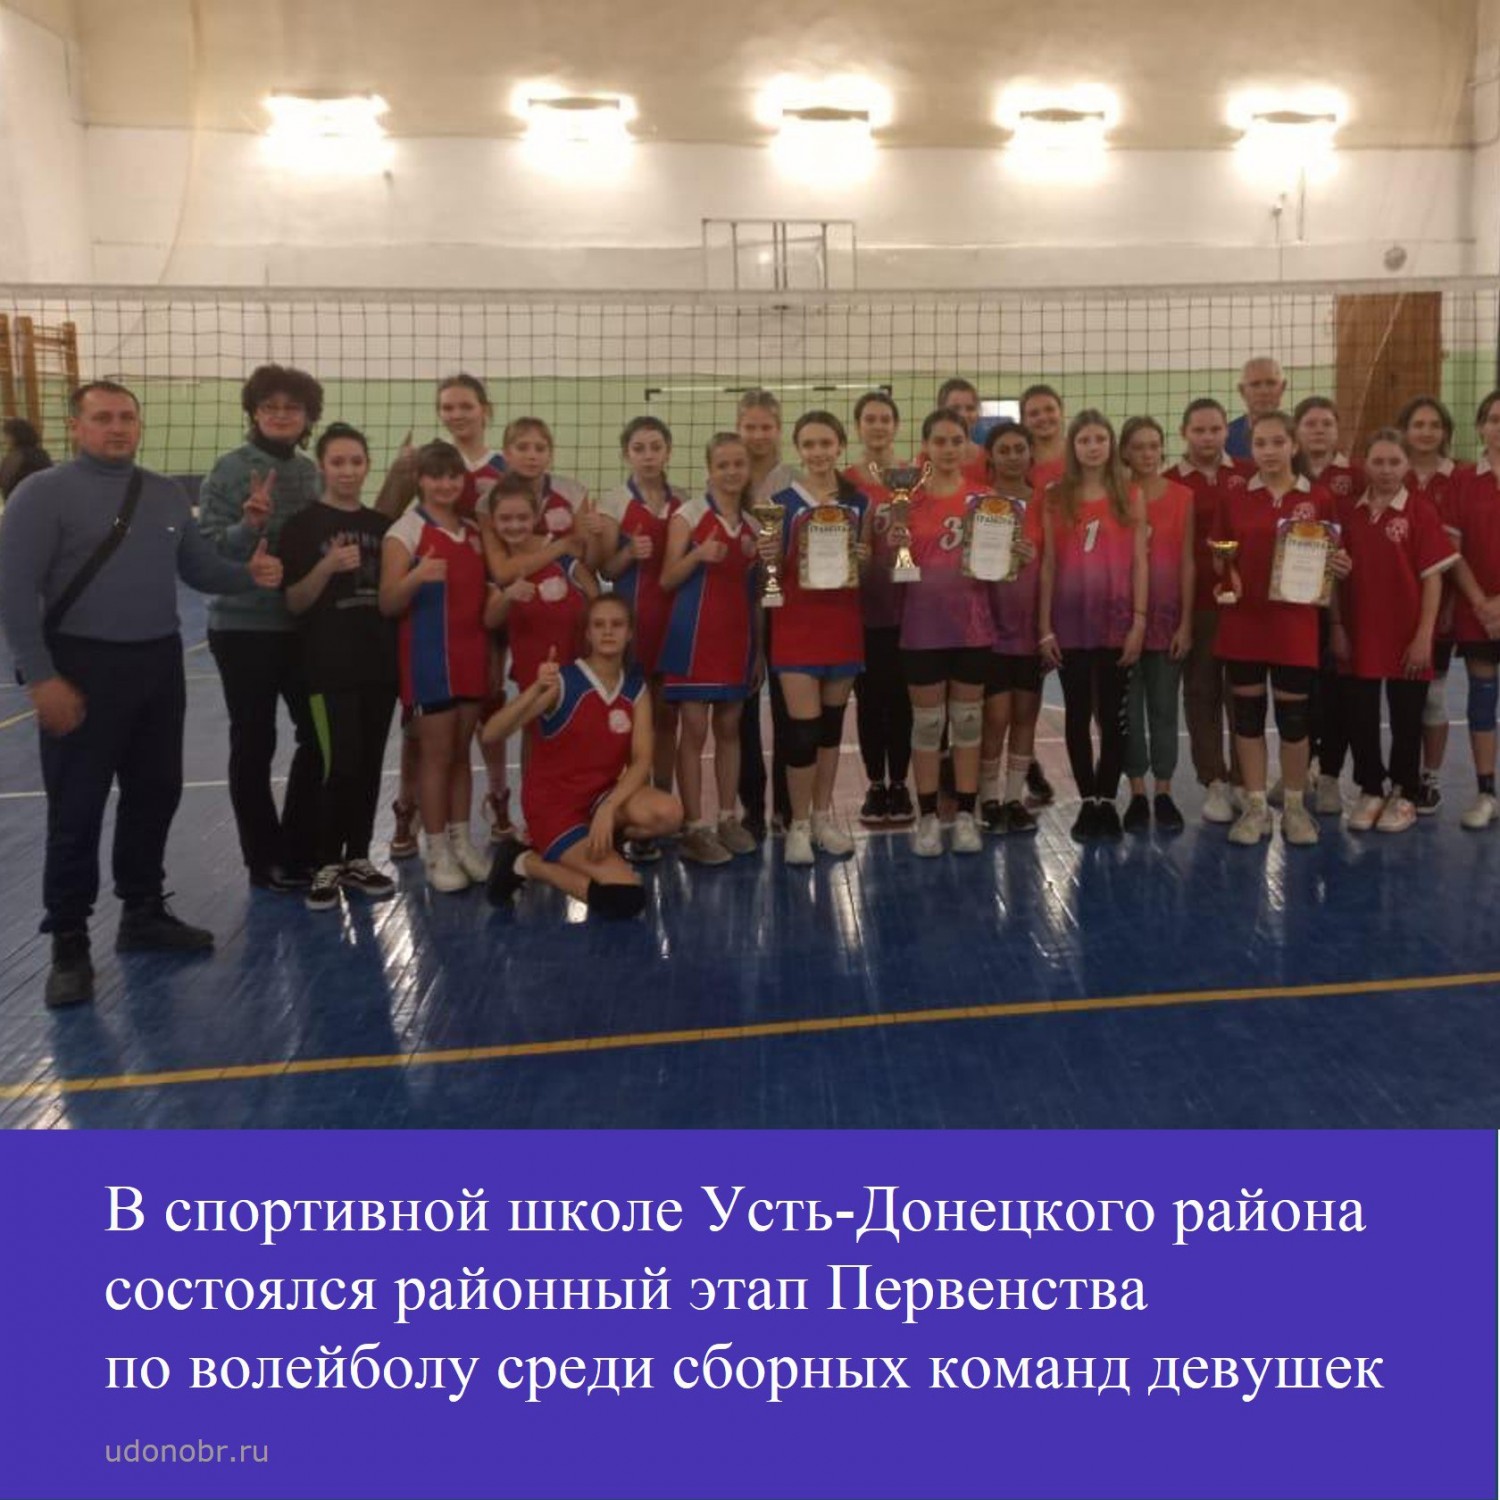 В спортивной школе Усть-Донецкого района состоялся районный этап Первенства по волейболу среди девушек